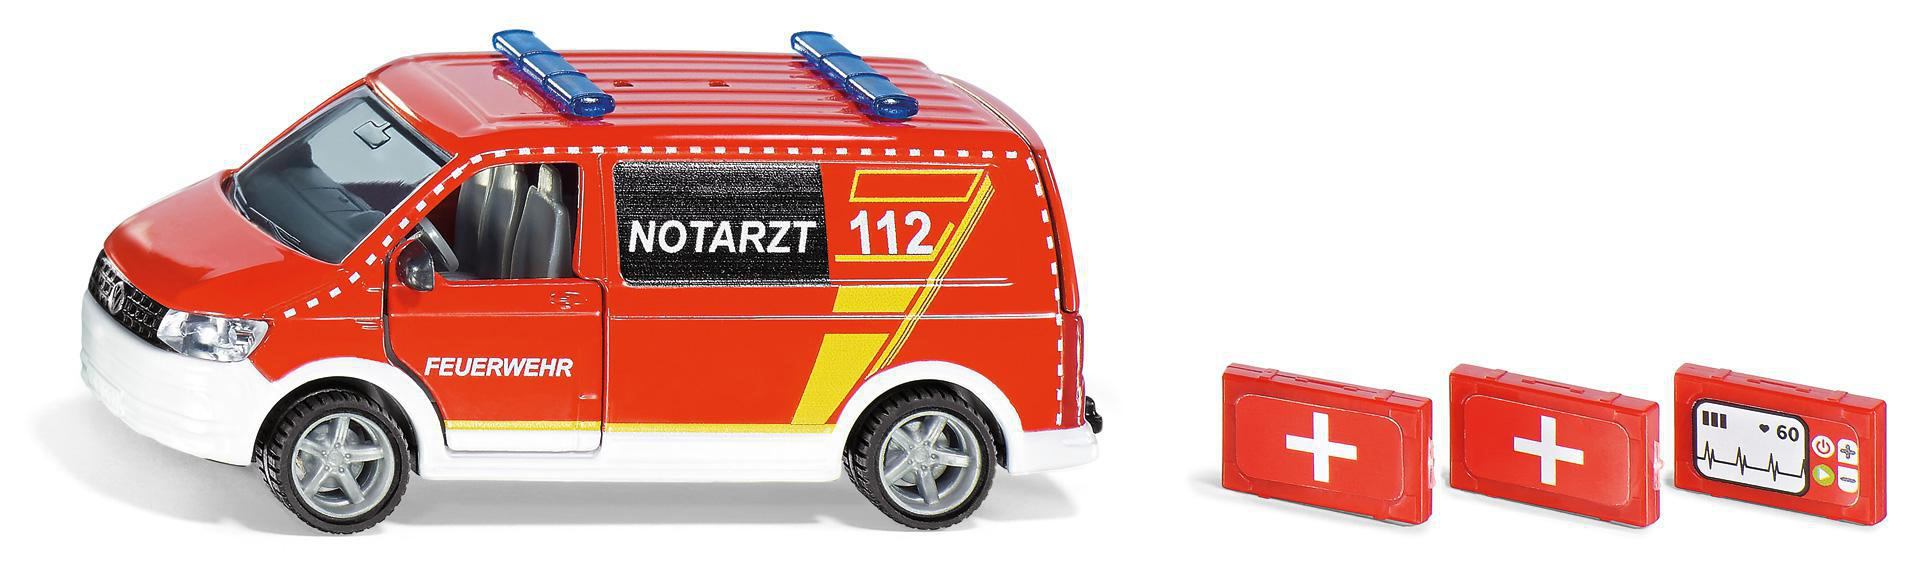 VW Notarztwagen Mehrfarbig T6 SIKU Spielzeugmodellfahrzeug, 2116